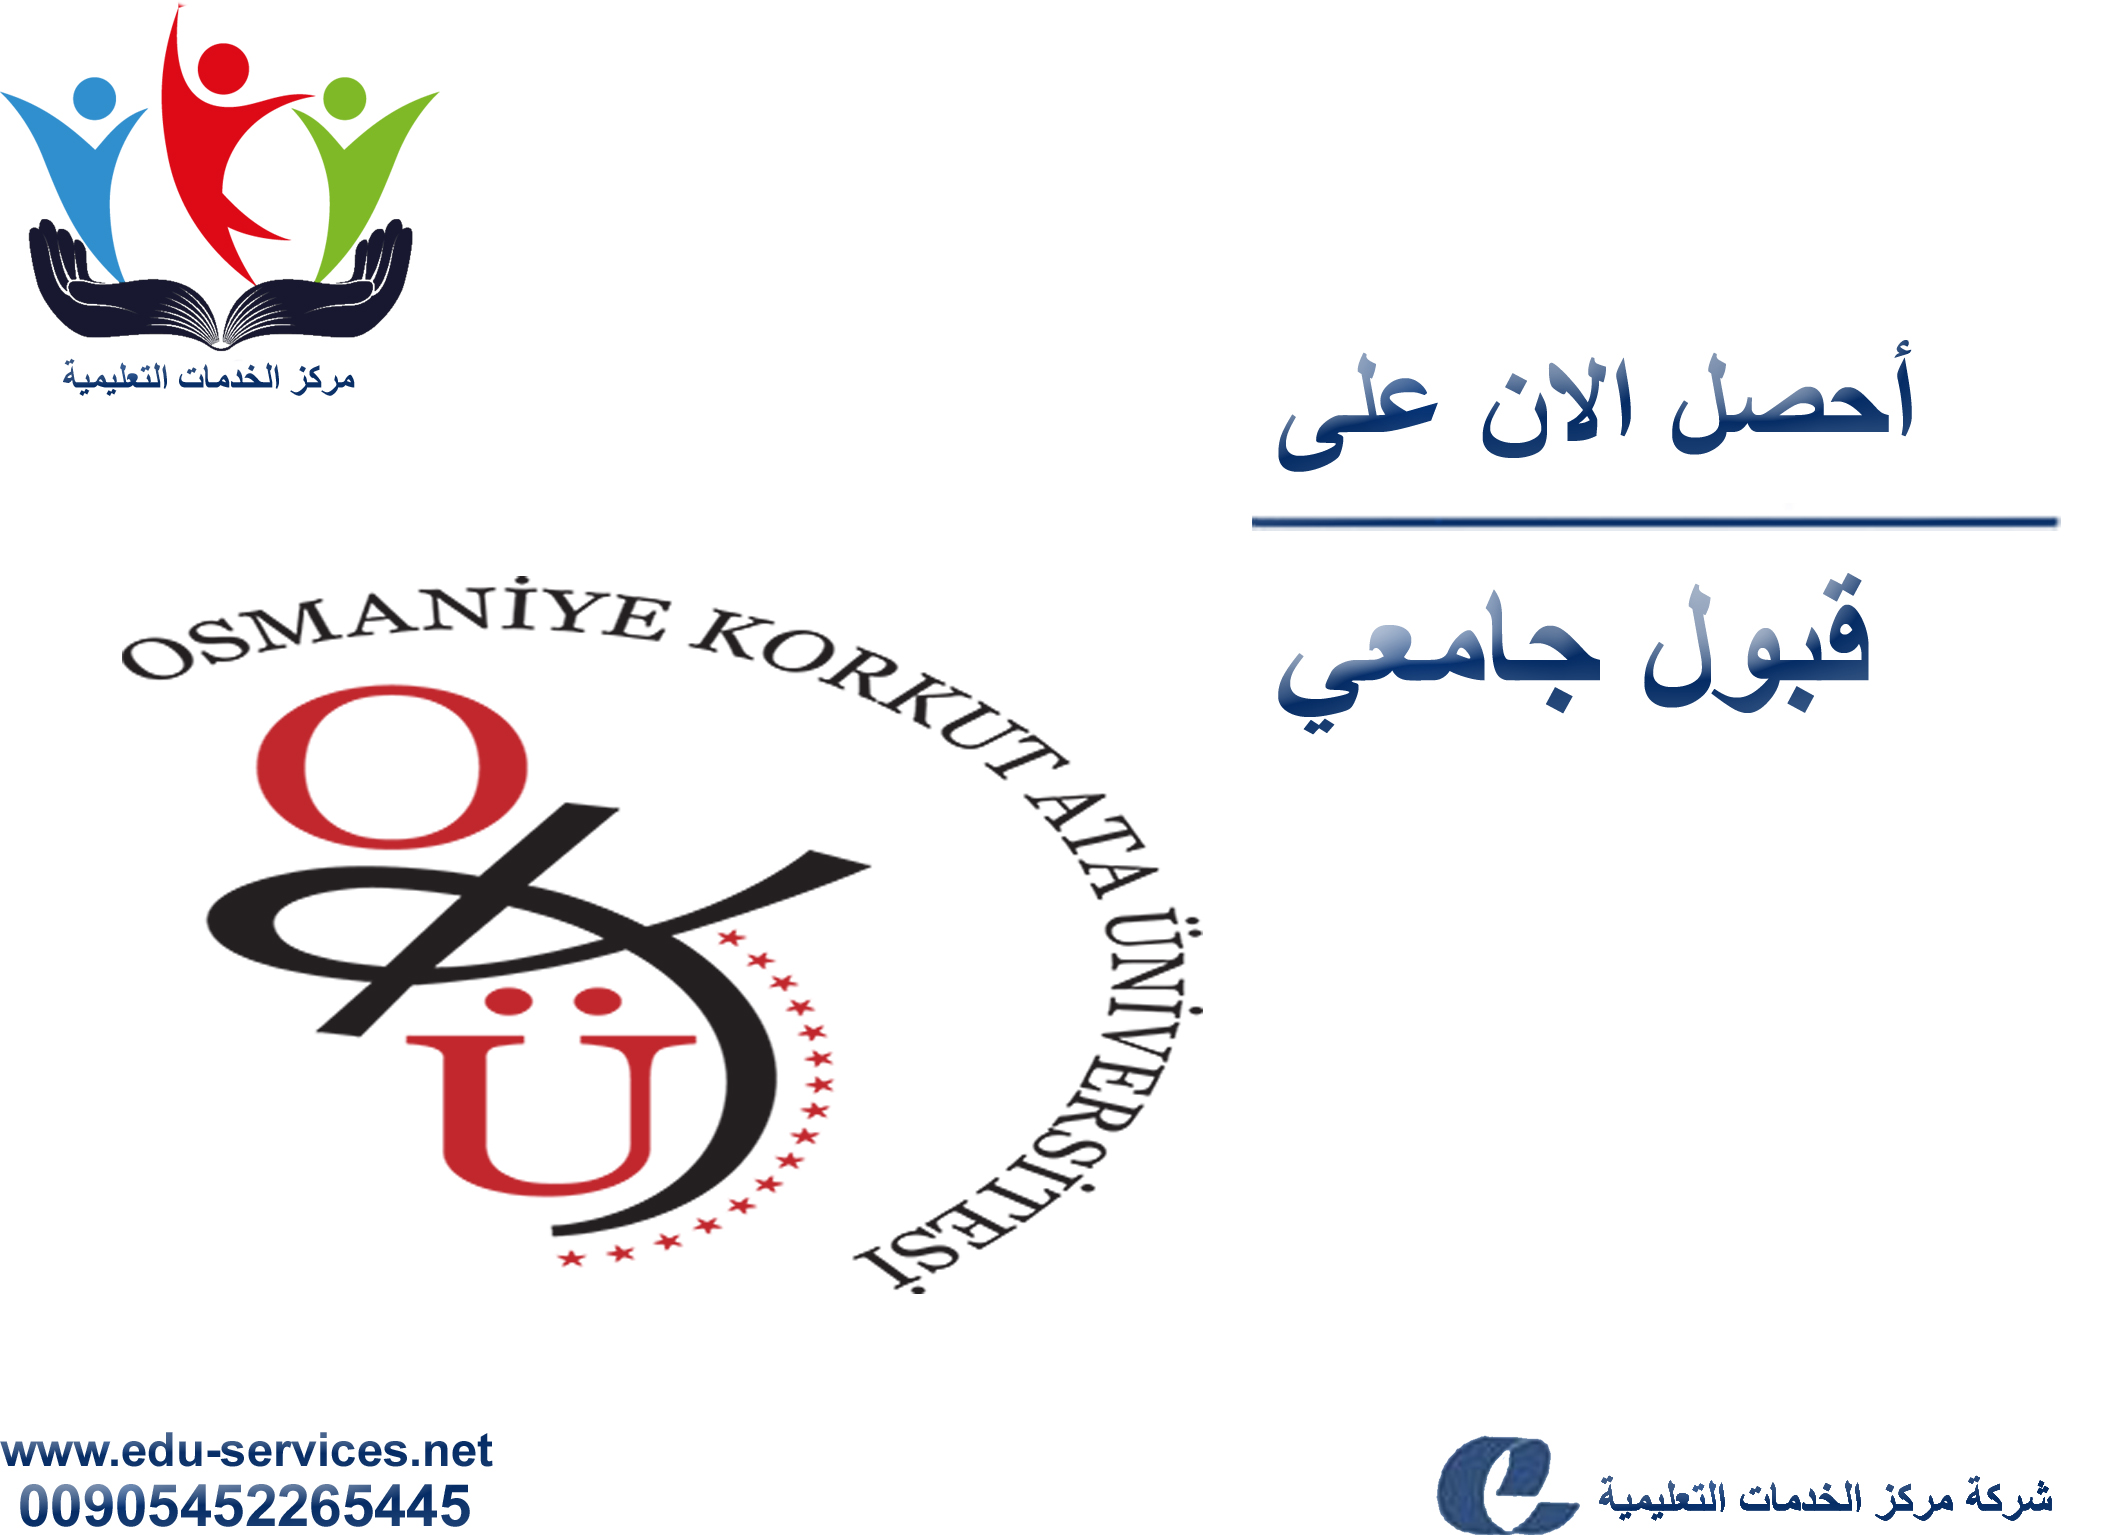 افتتاح التسجيل في جامعة العثمانية للعام 2018-2019